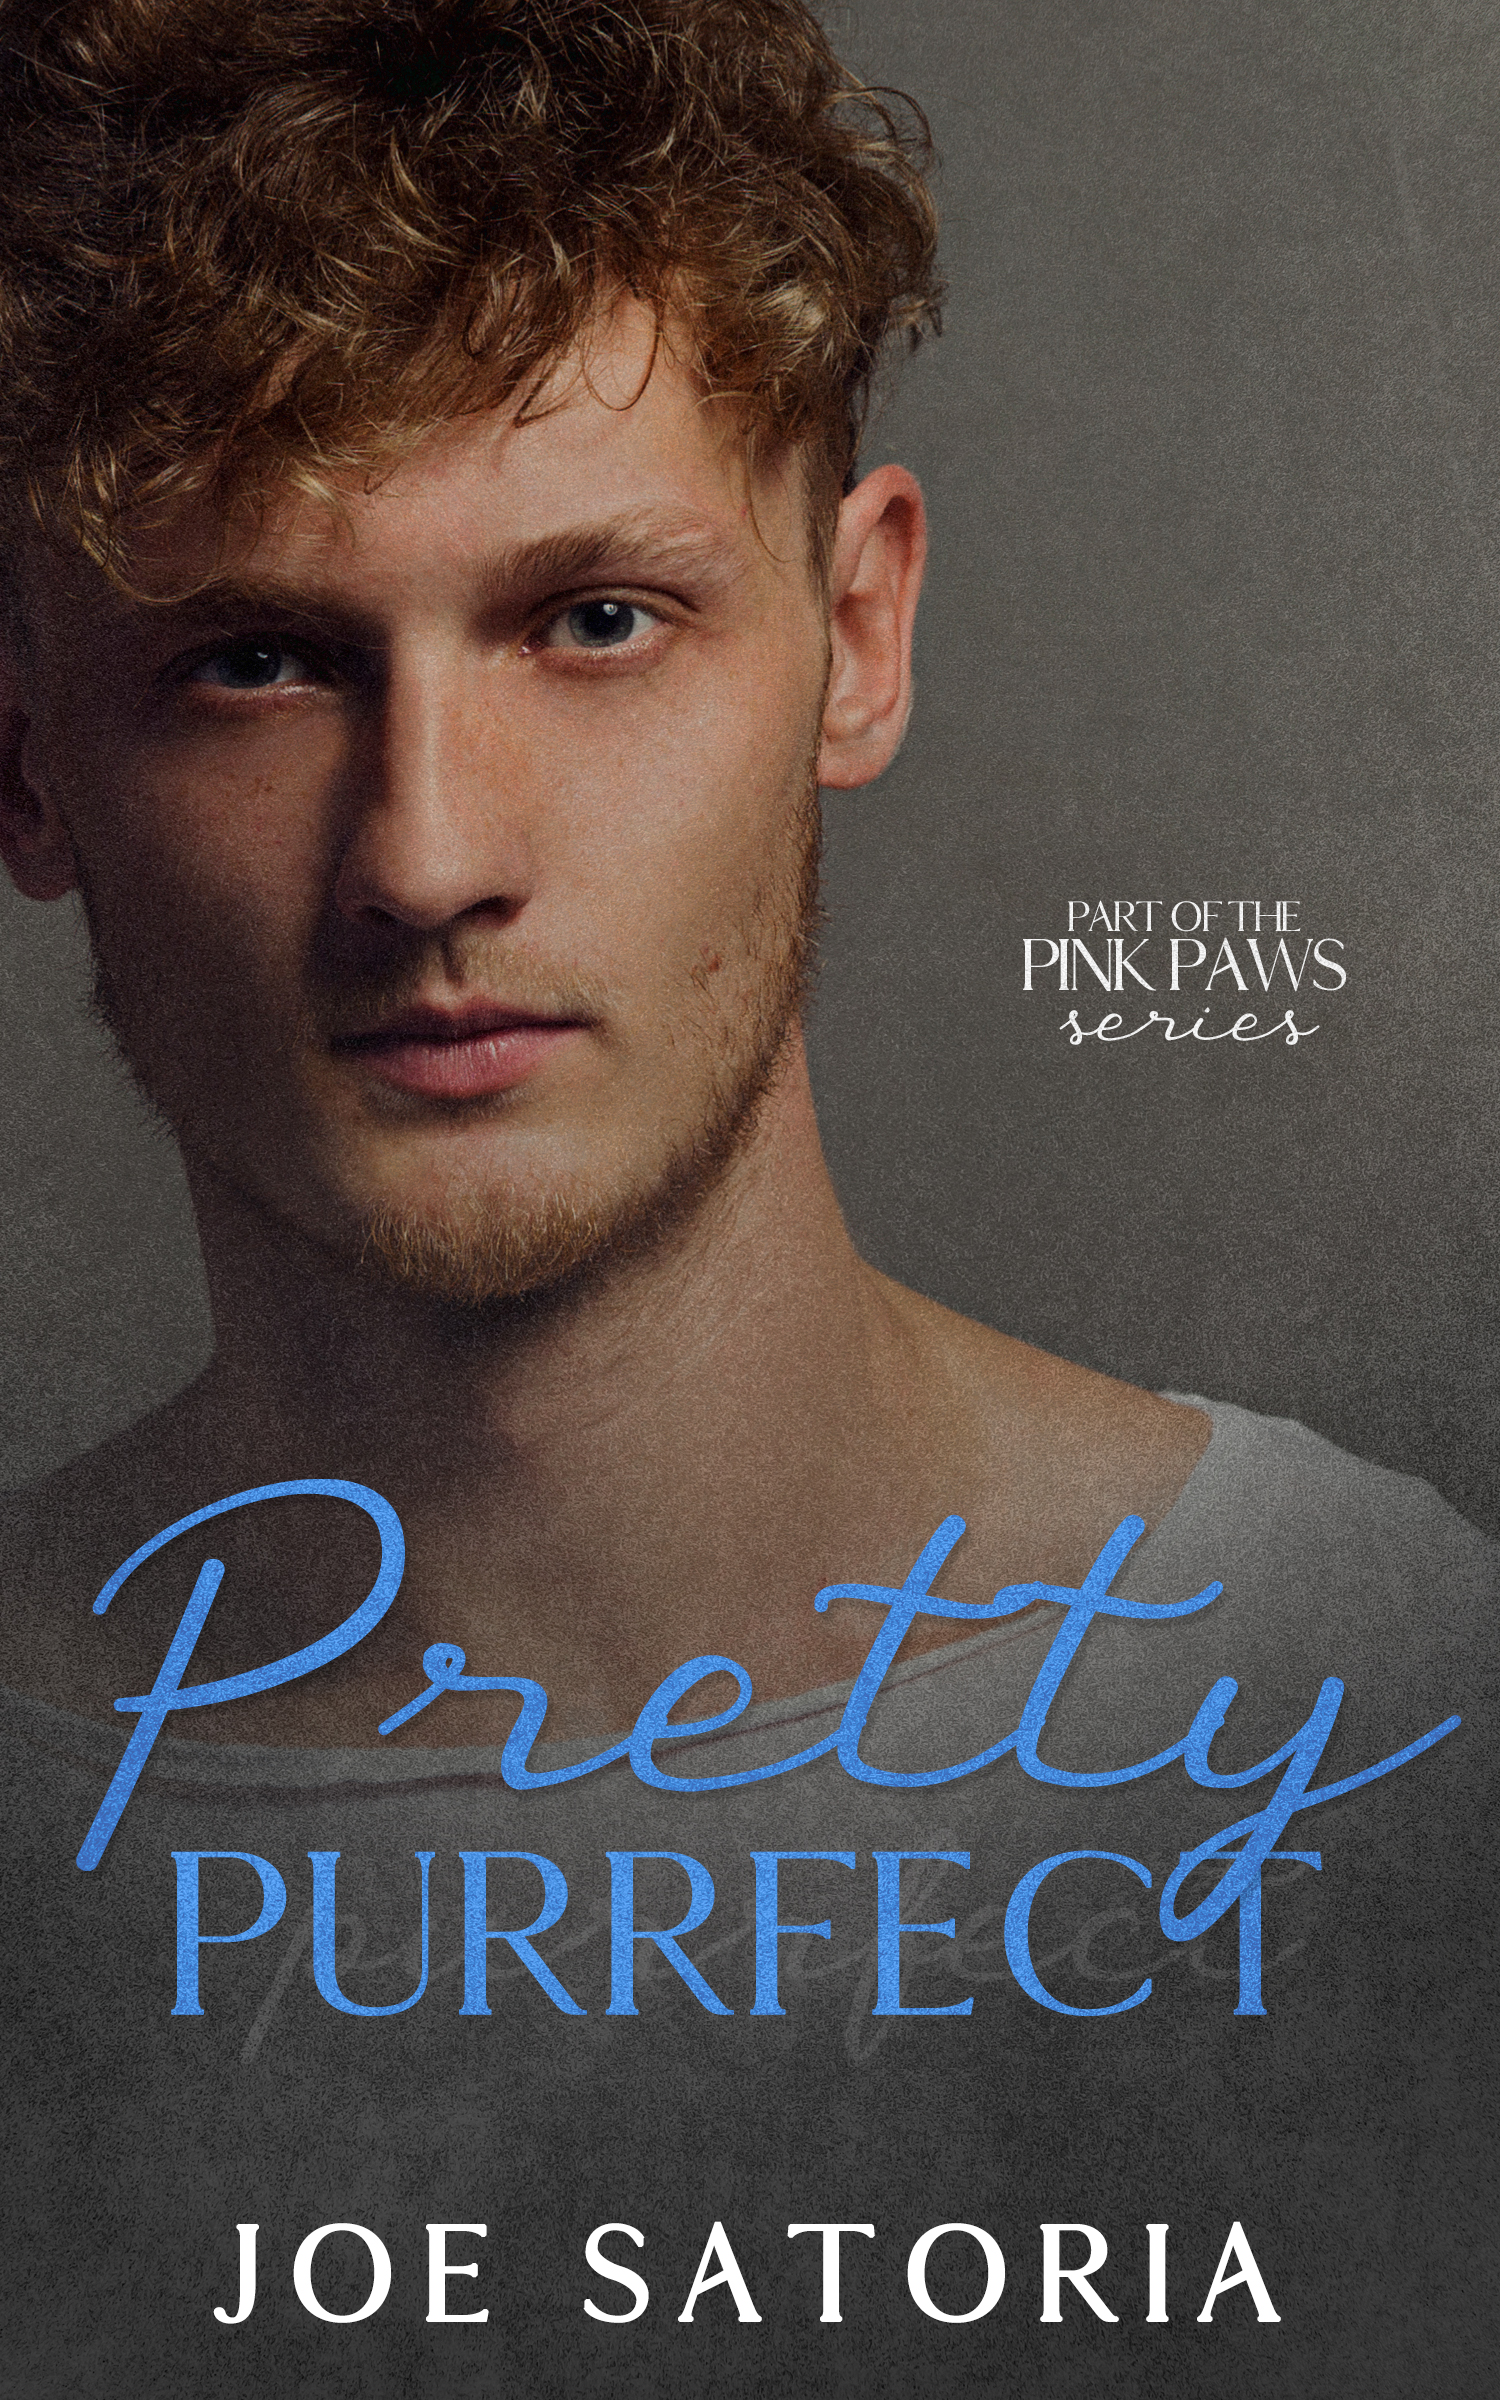 2 - Pretty Purrfect